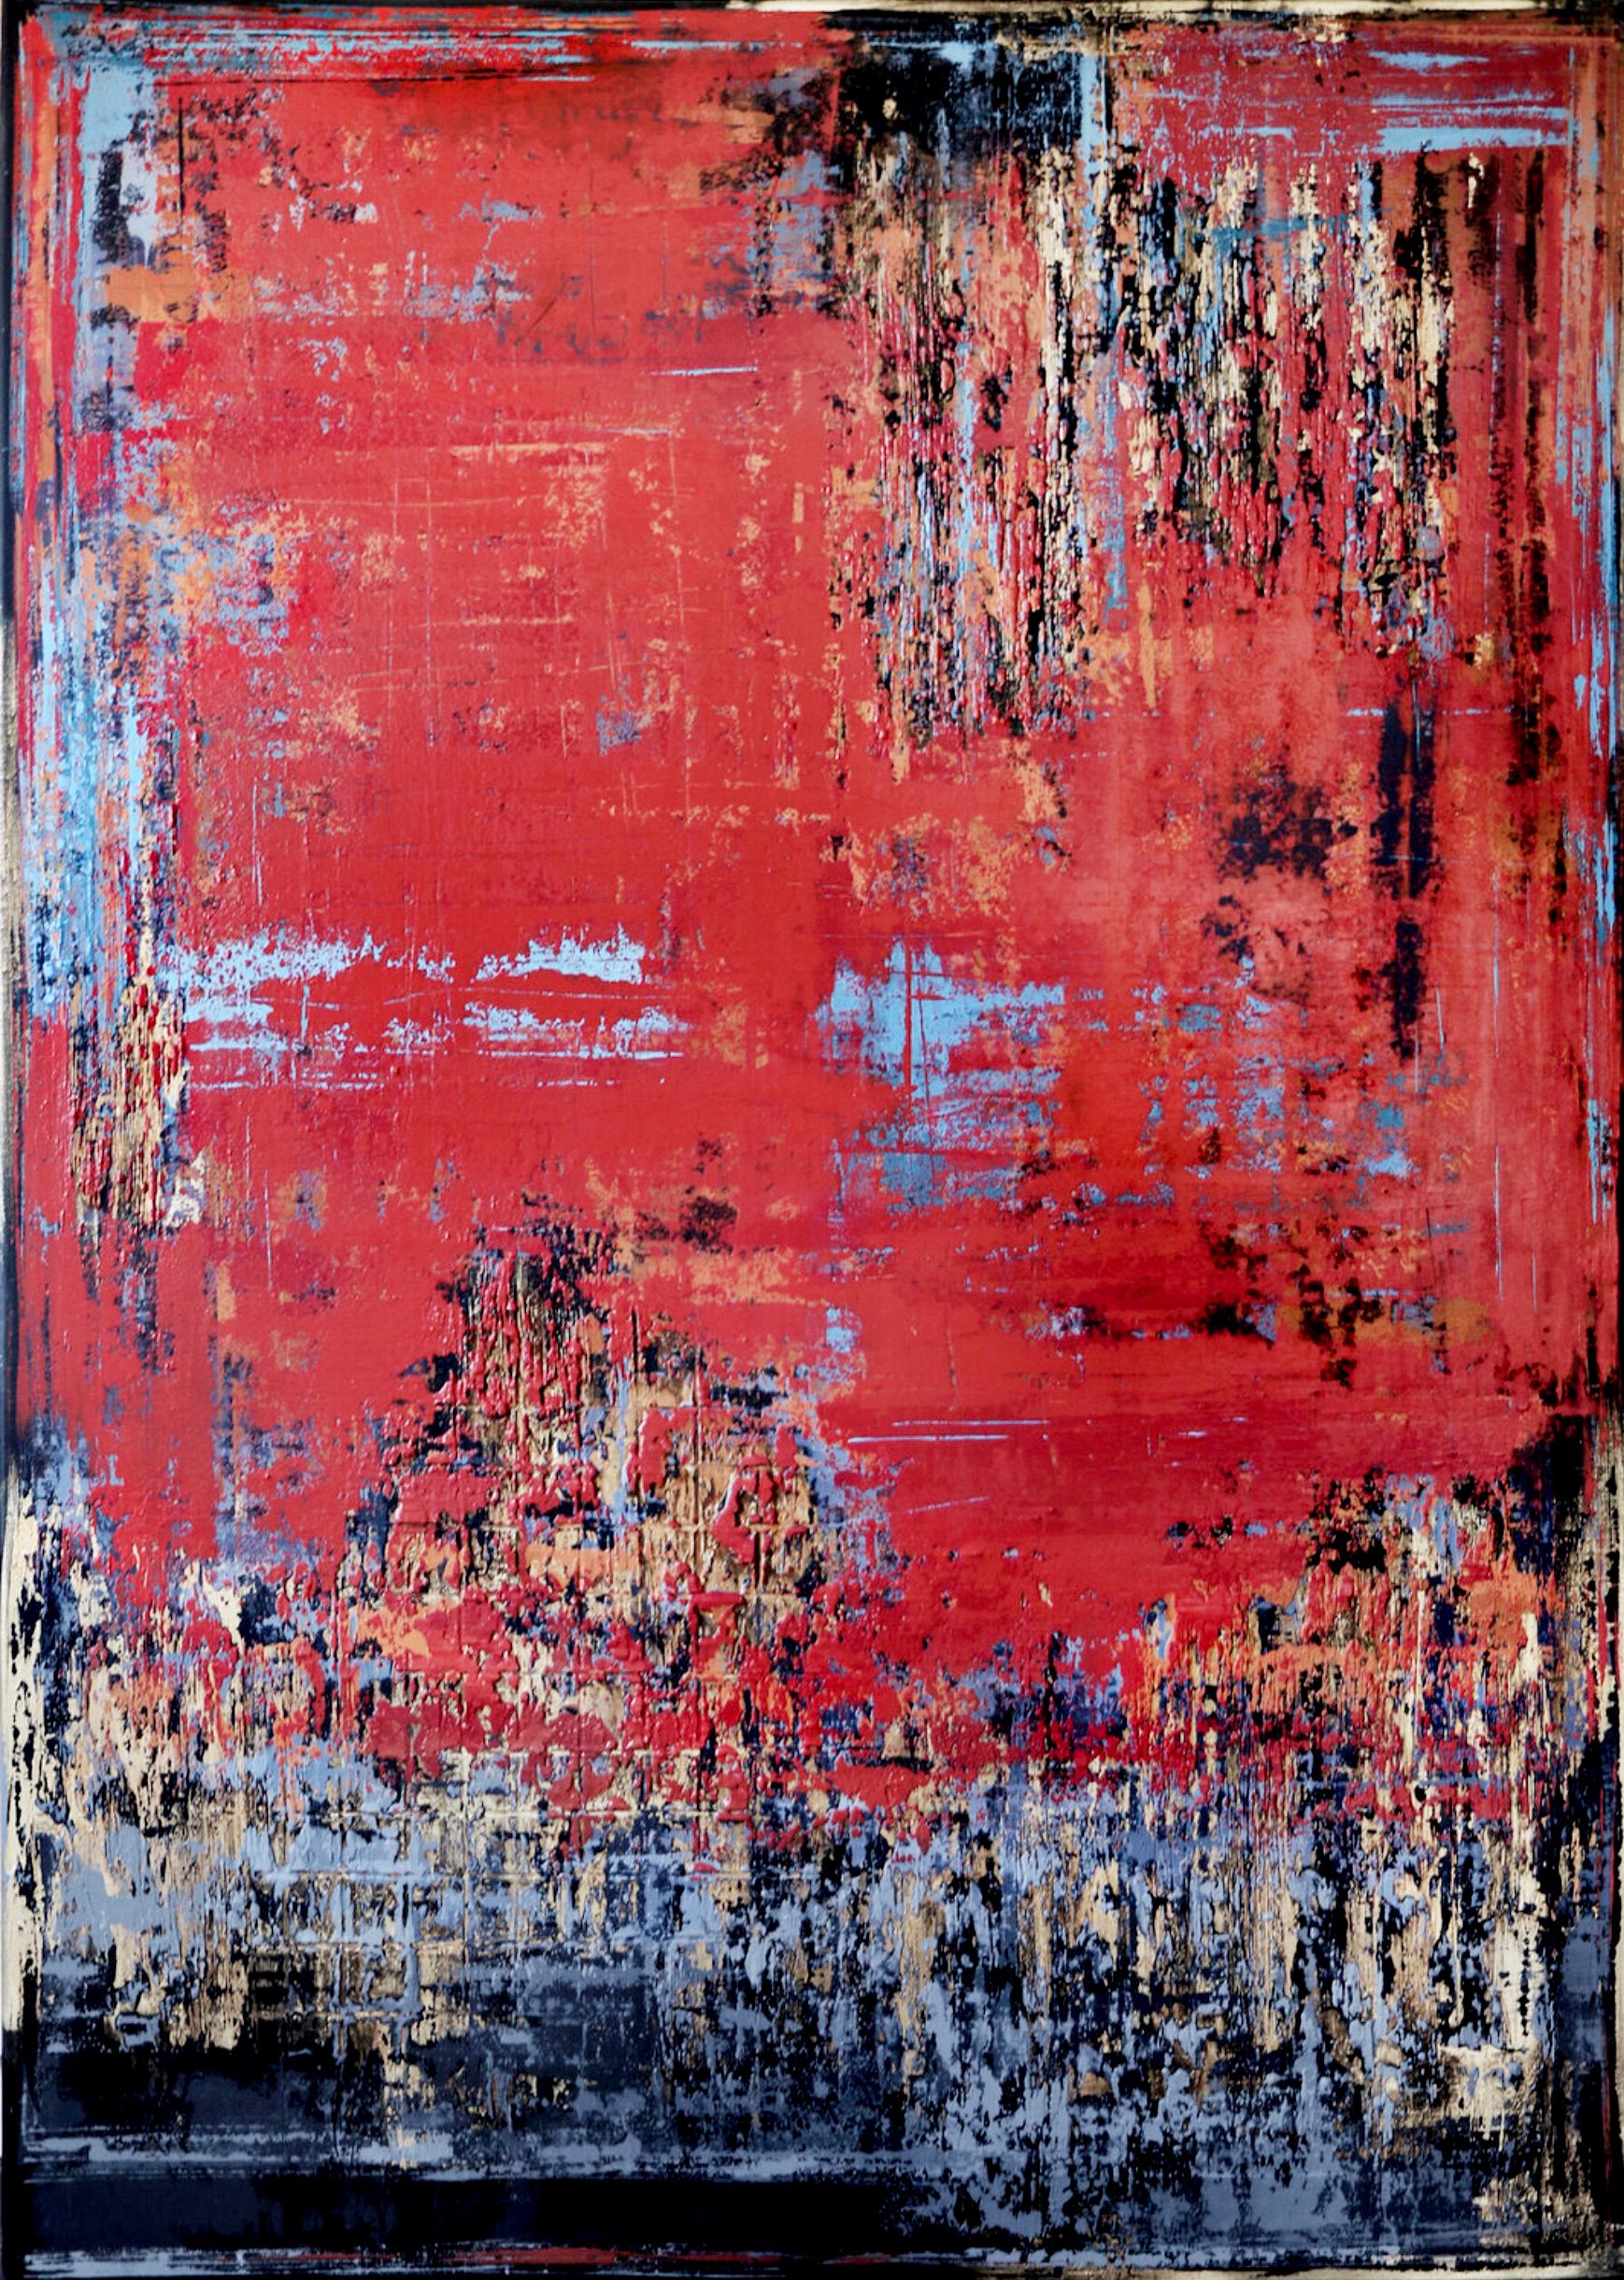 En el cuadro expresionista y abstracto "UNTOLD STORY" de Inez Froehlich predominan los colores rojo ladrillo/rojo industrial, gris, dorado y cobre. El estilo de la pintura es shabby chic, estilo industrial, vintage, retro, boho, rústico.